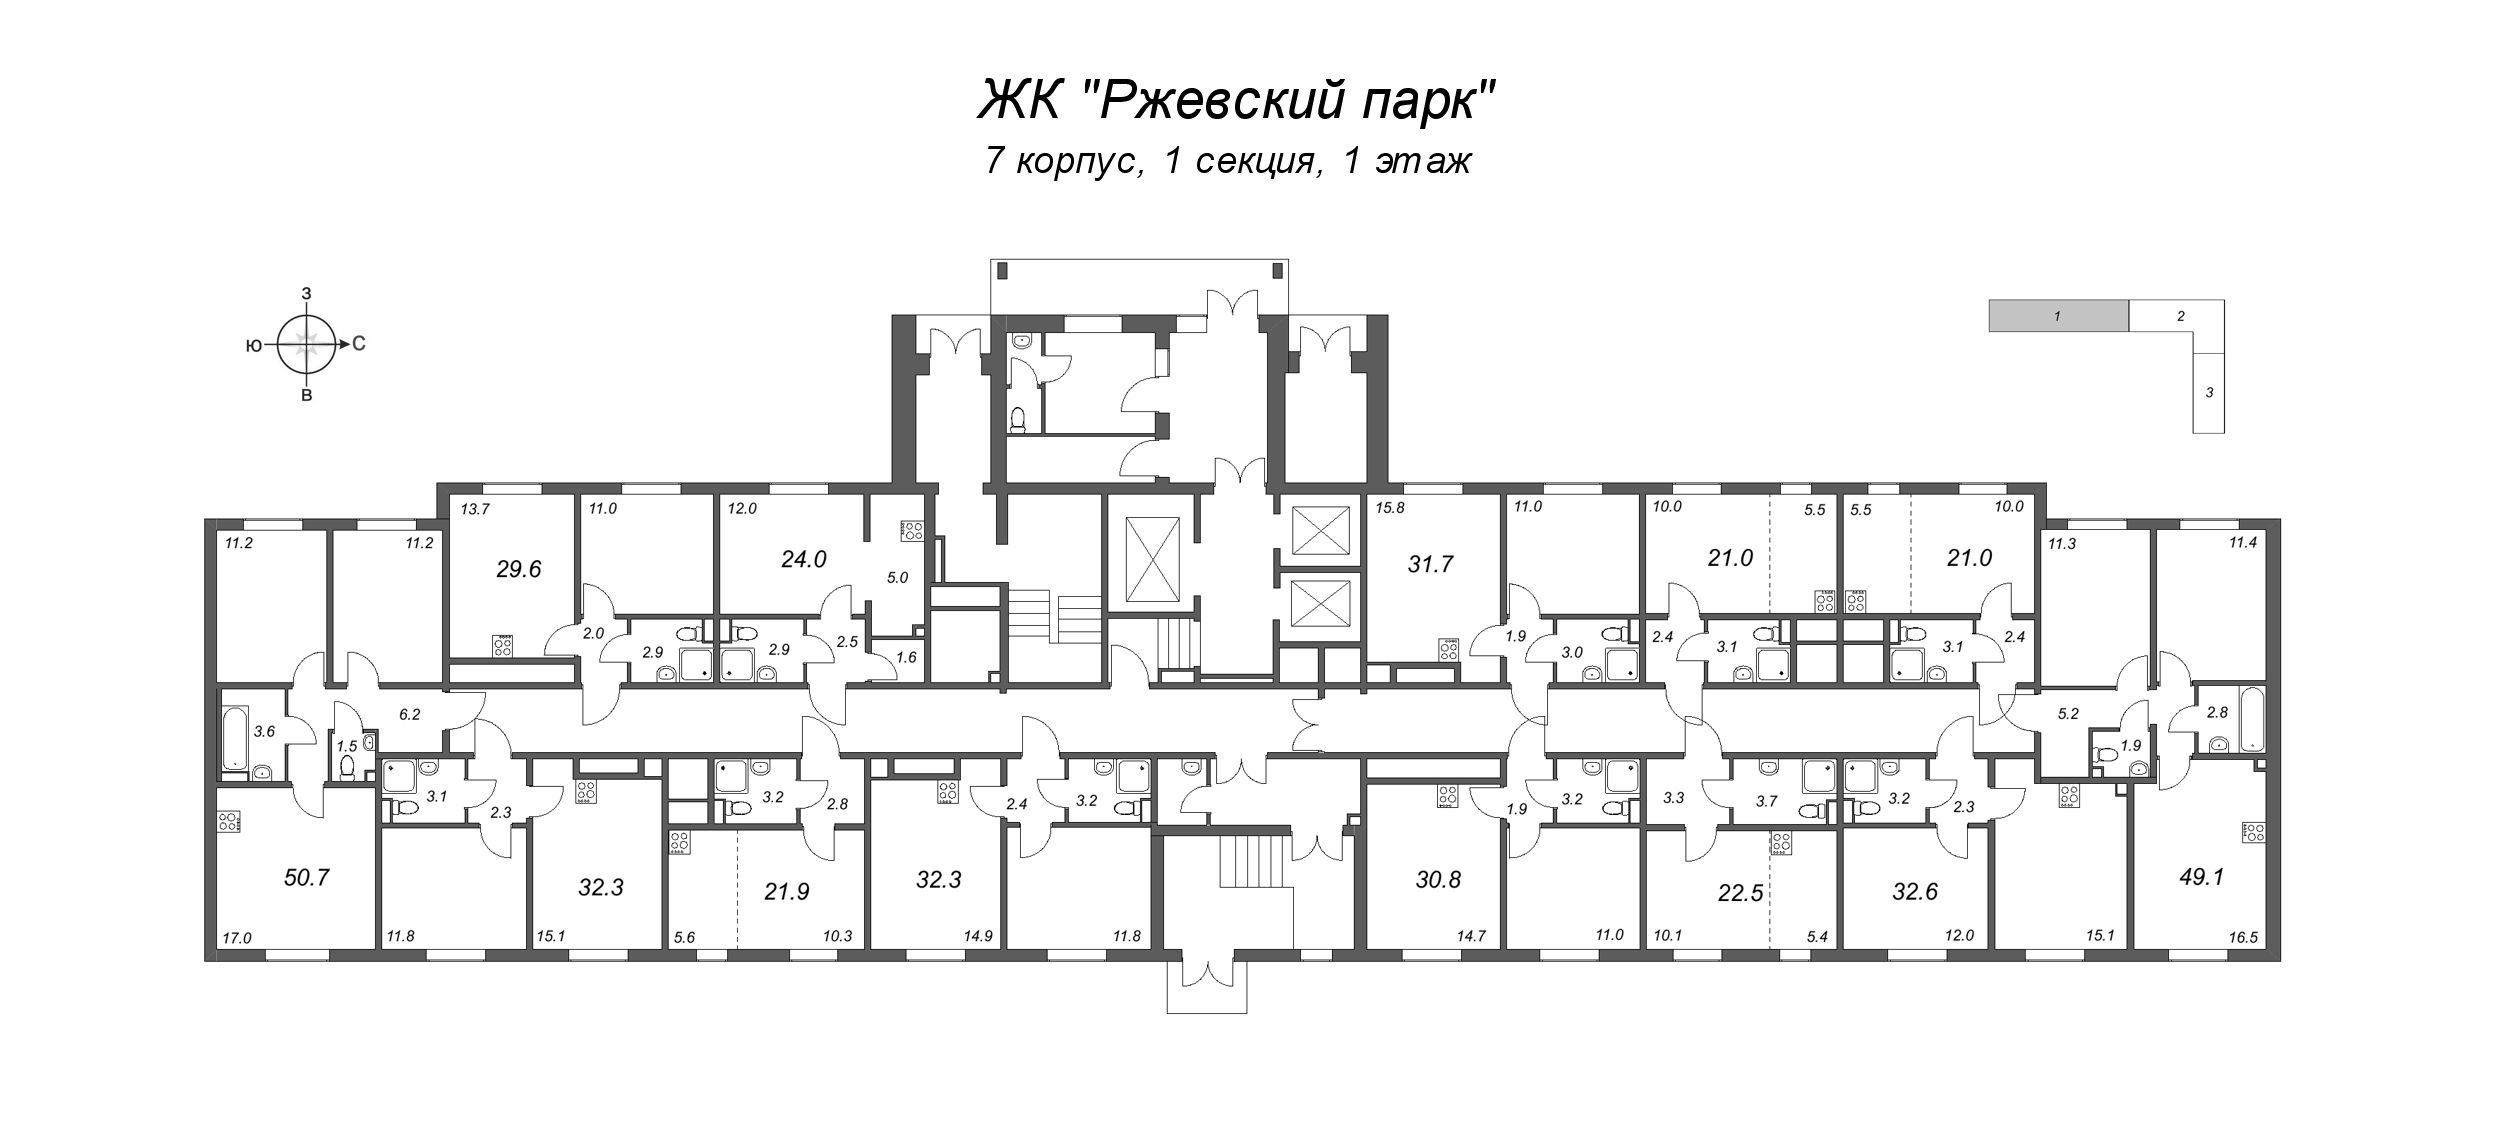 2-комнатная (Евро) квартира, 32.6 м² в ЖК "ЛСР. Ржевский парк" - планировка этажа